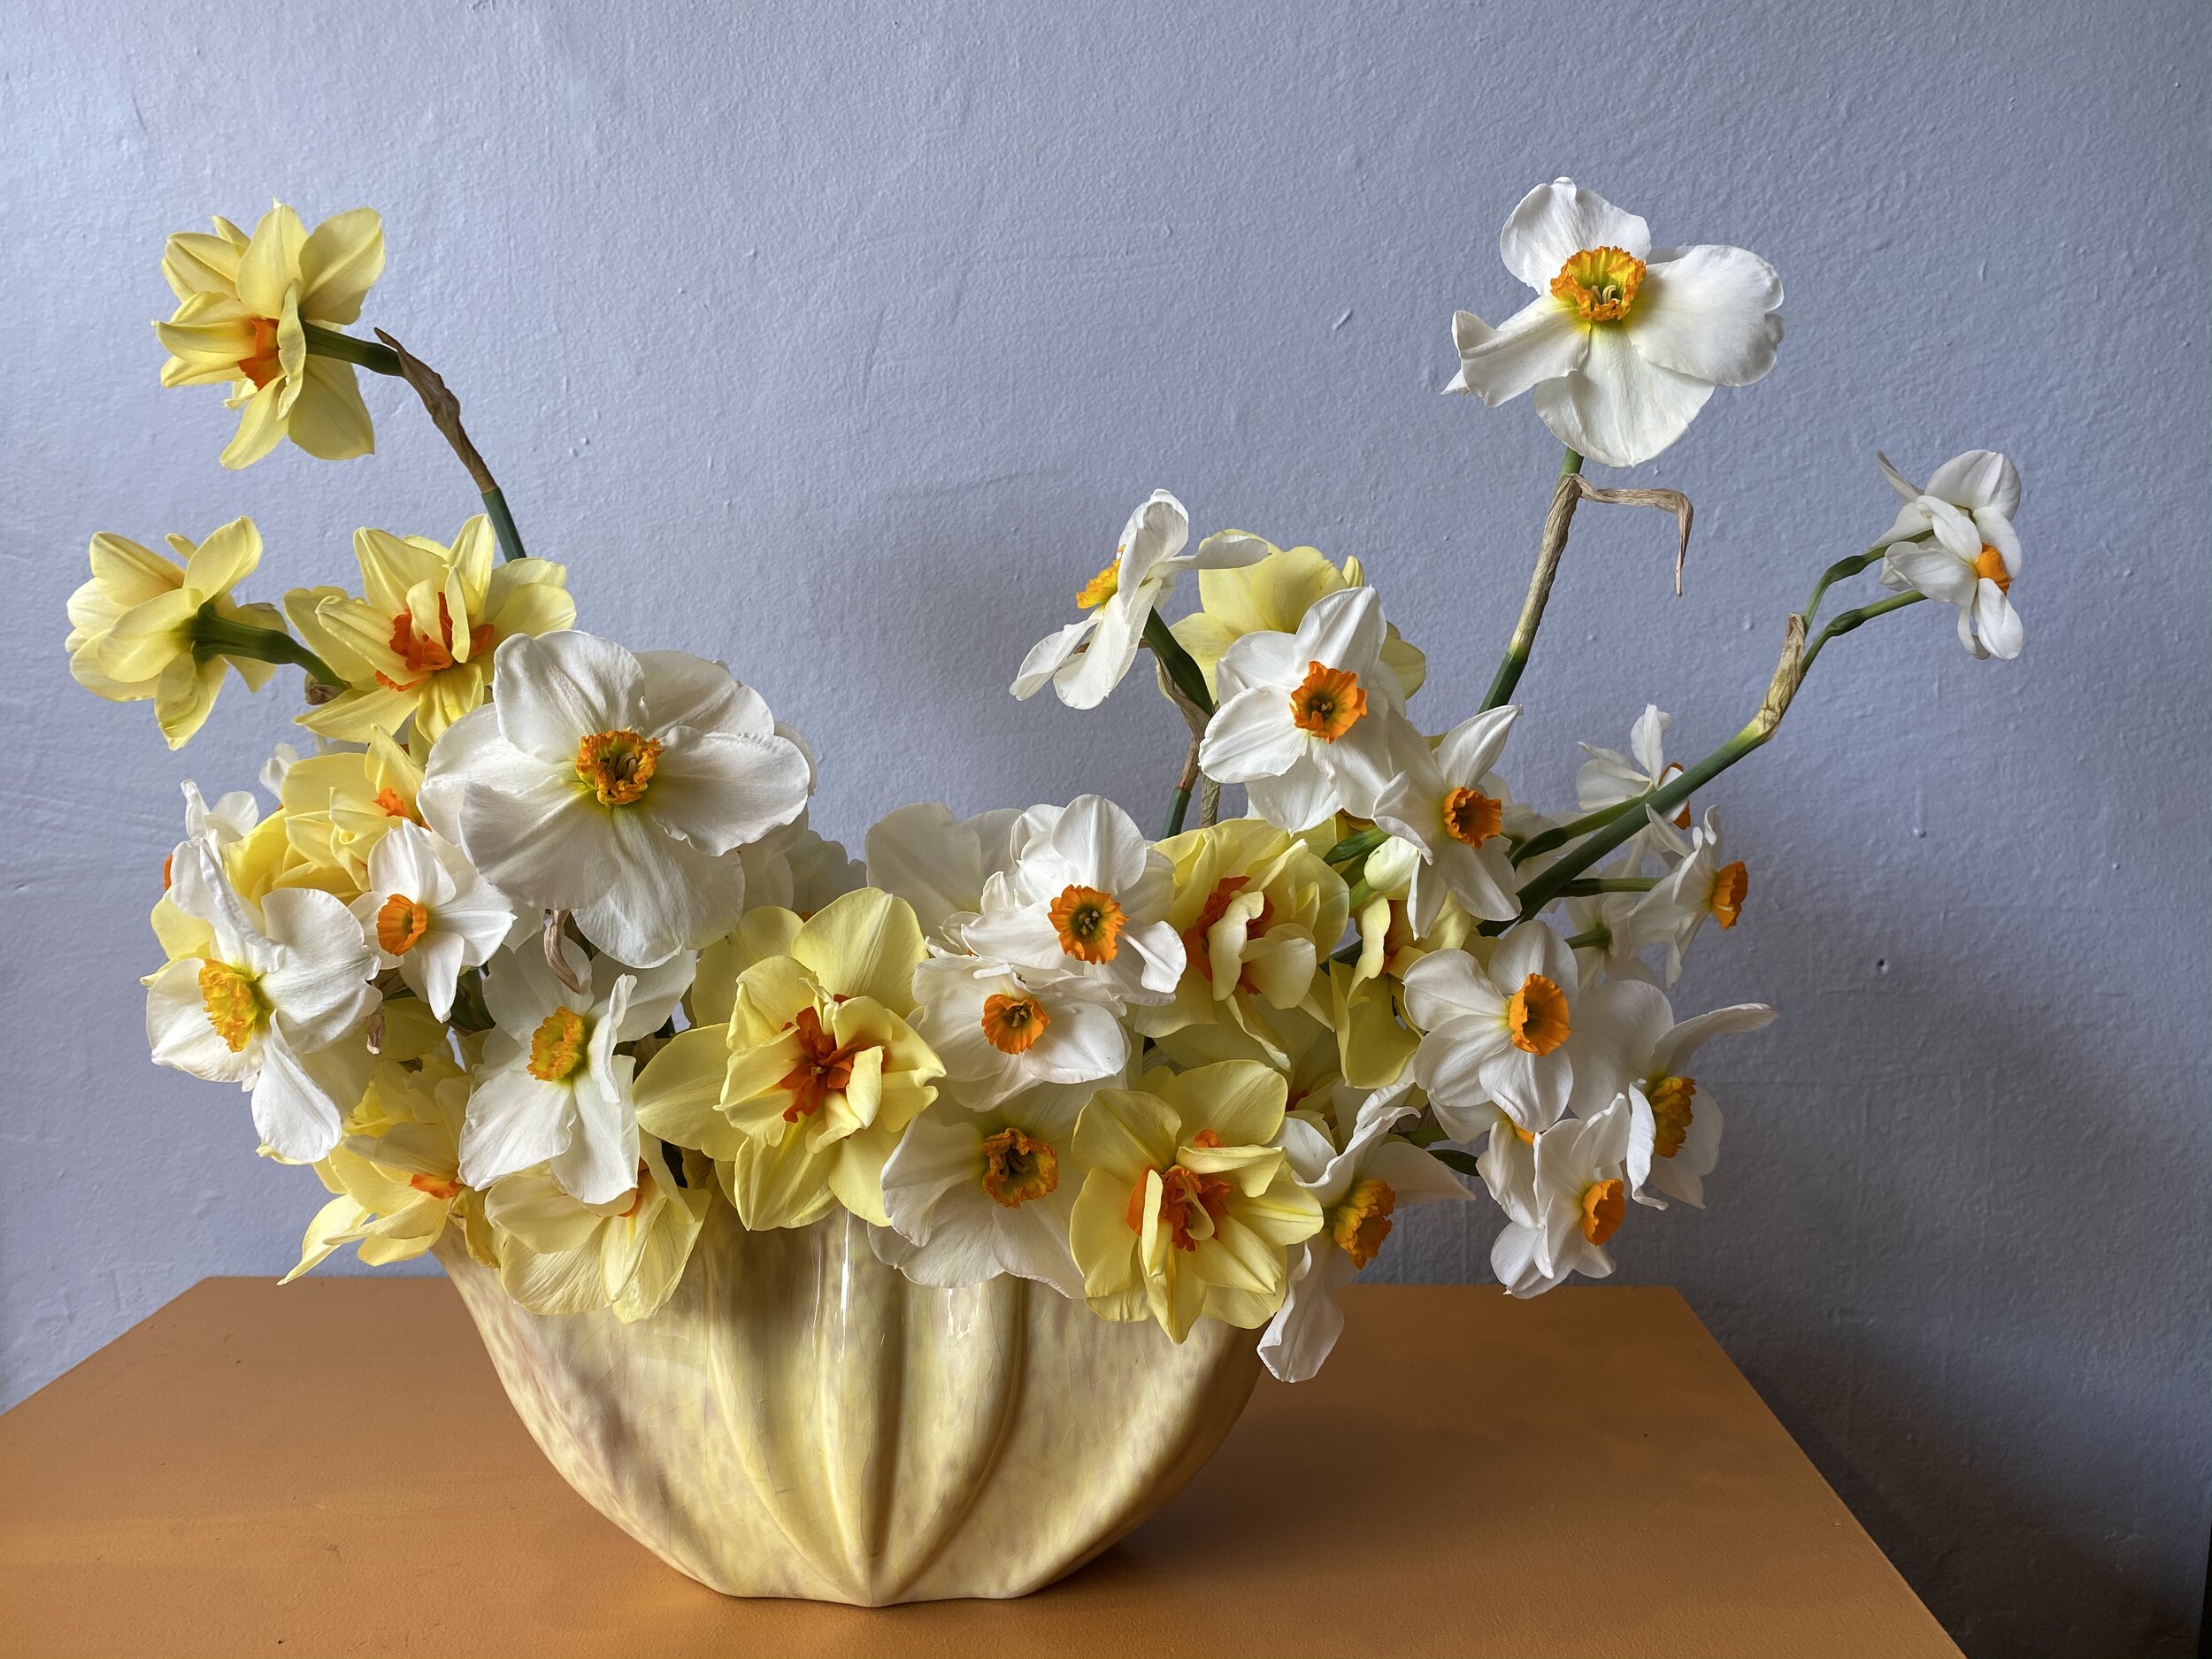 Daffodils and jonquils (1).jpeg